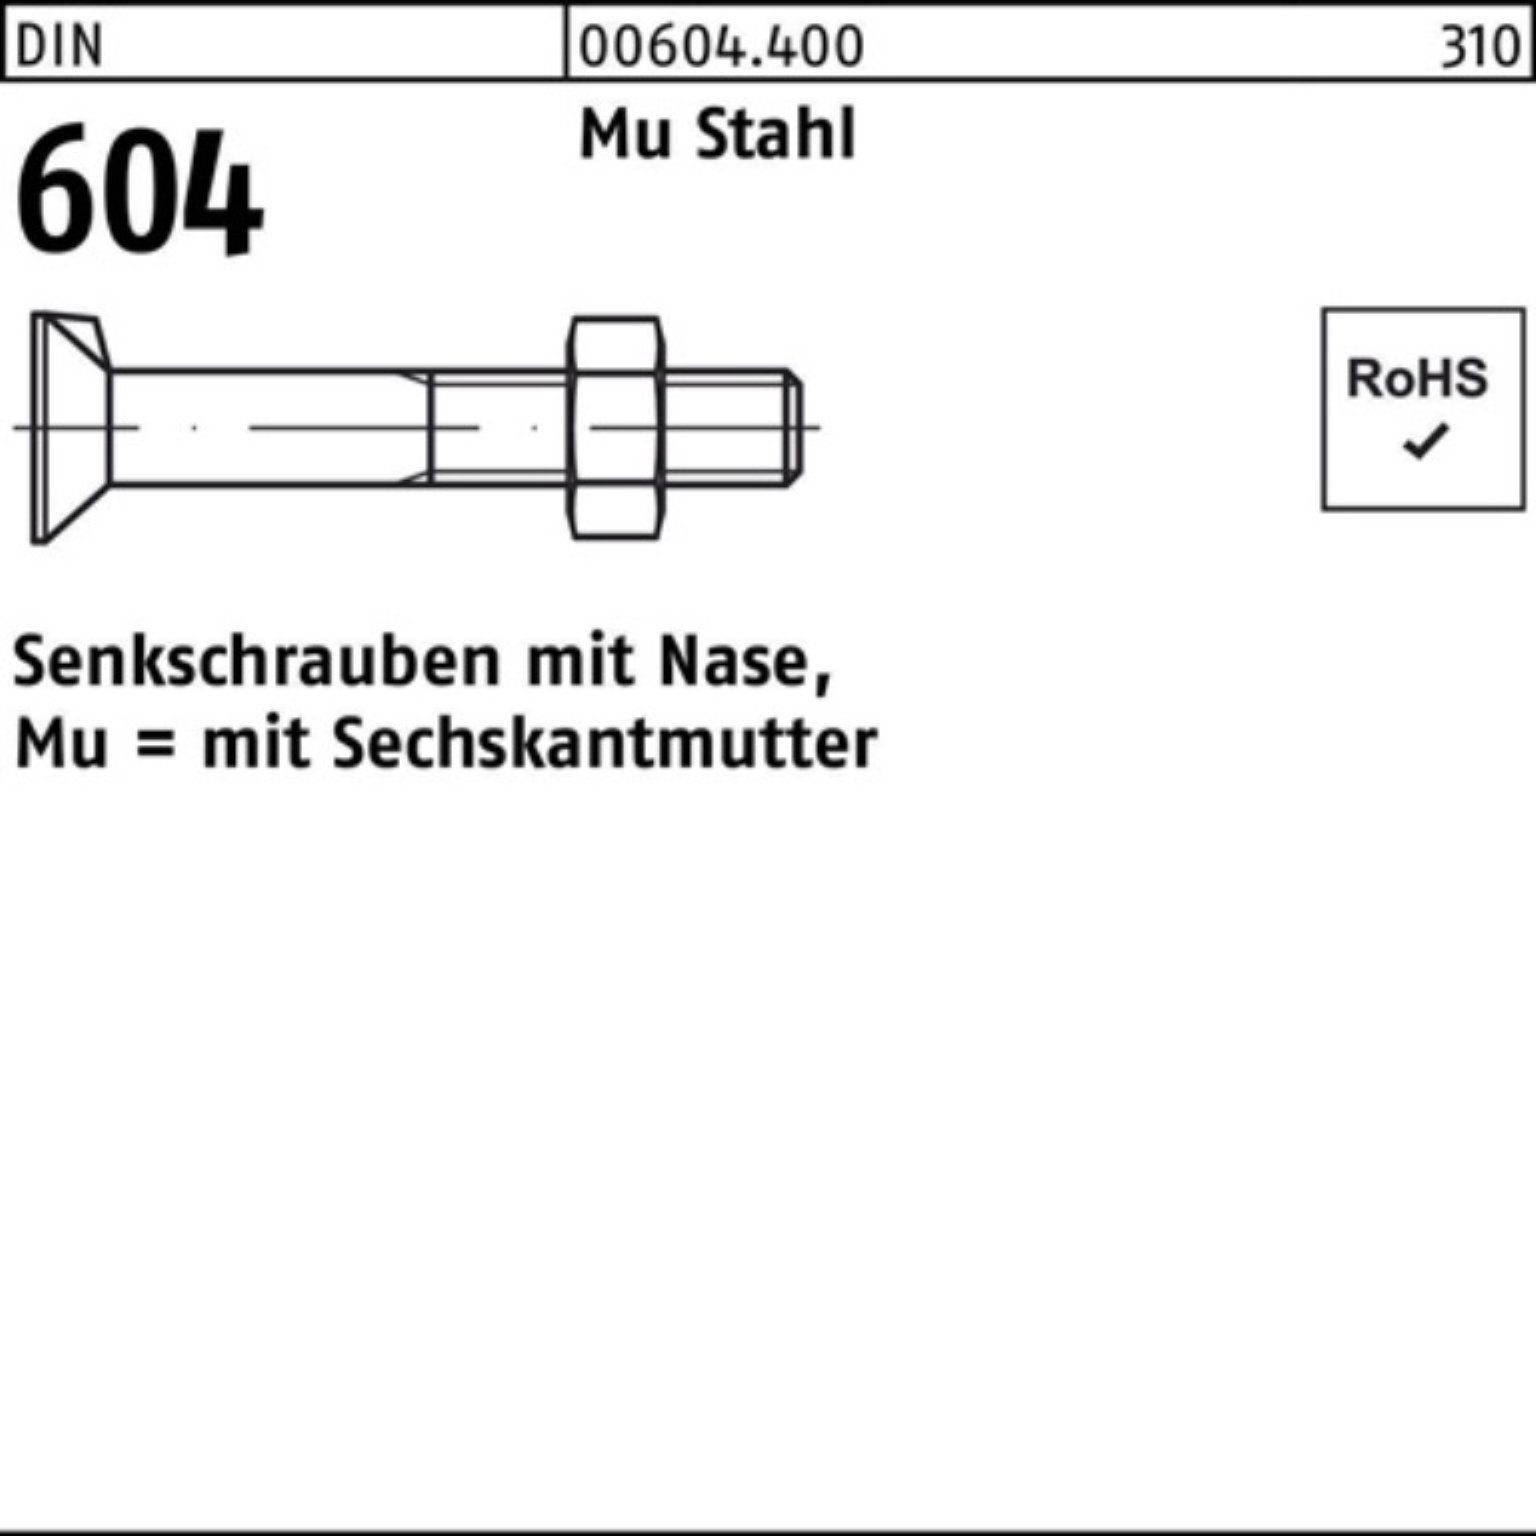 Reyher Senkschraube 200er Pack Senkschraube DIN 604 Nase/6-ktmutter M6x 40 Mu Stahl 4.6 20